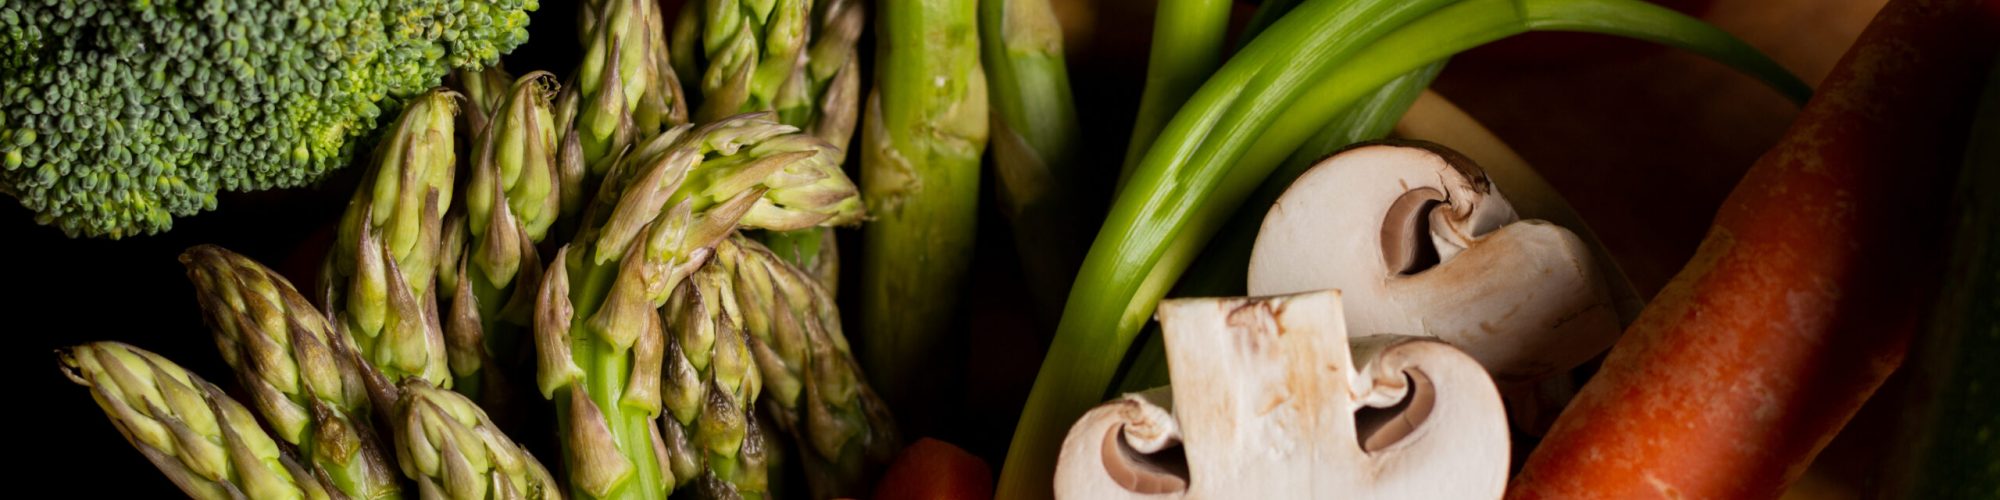 Frisch geerntetes Gemüse in einer Holzschale. Konzept für regionales gesundes Gemüse und eine vielfältige Ernährung